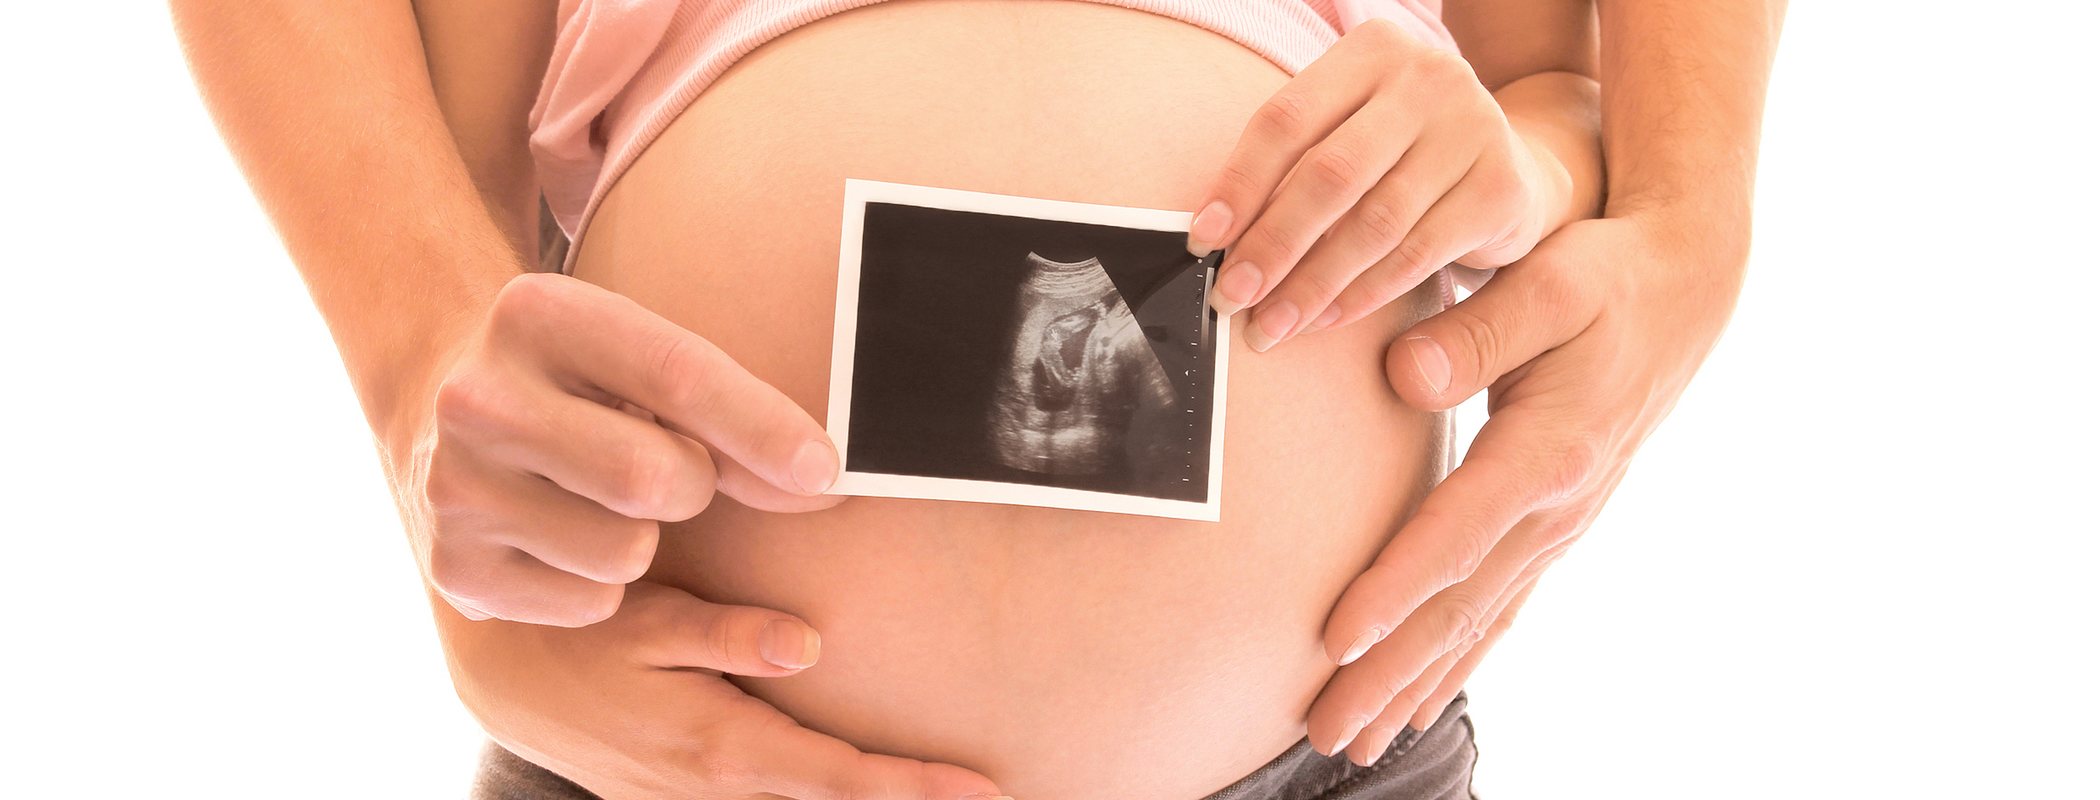 Sexo en el embarazo: ¿Qué siente el feto mientras se tienen relaciones?